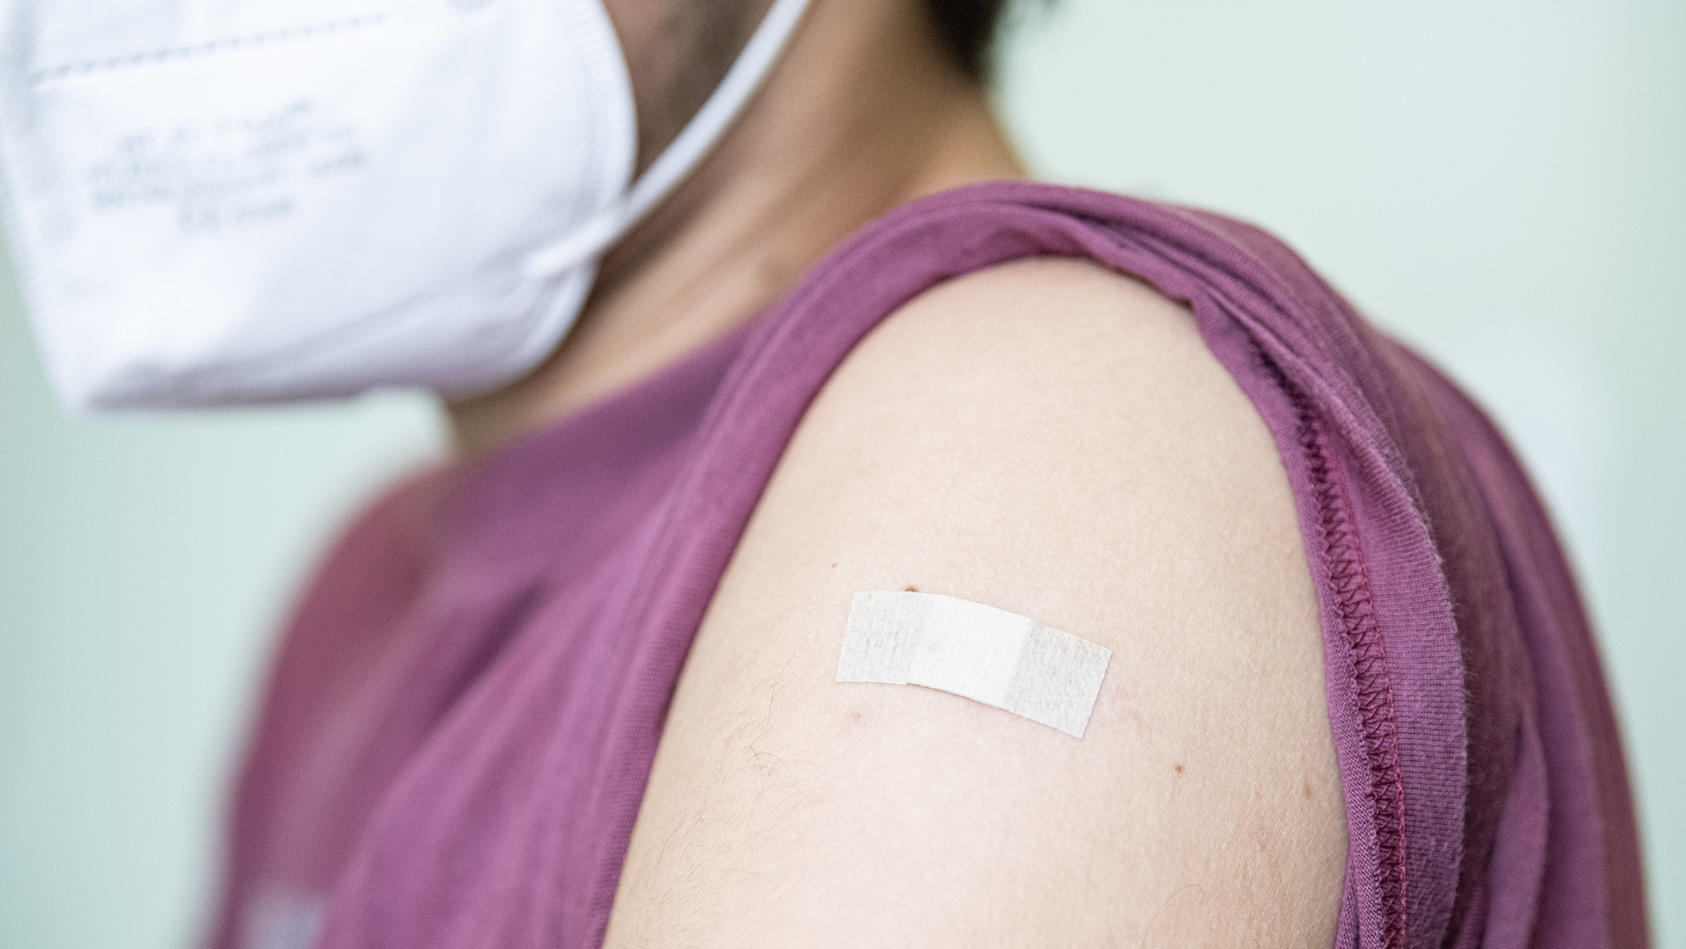 09.06.2021, Berlin: Auf dem Arm eines Jugendlichen klebt ein Pflaster, nachdem er mit dem Corona-Impfstoff Comirnaty von Biontech/Pfizer geimpft wurde. Foto: Fabian Sommer/dpa +++ dpa-Bildfunk +++